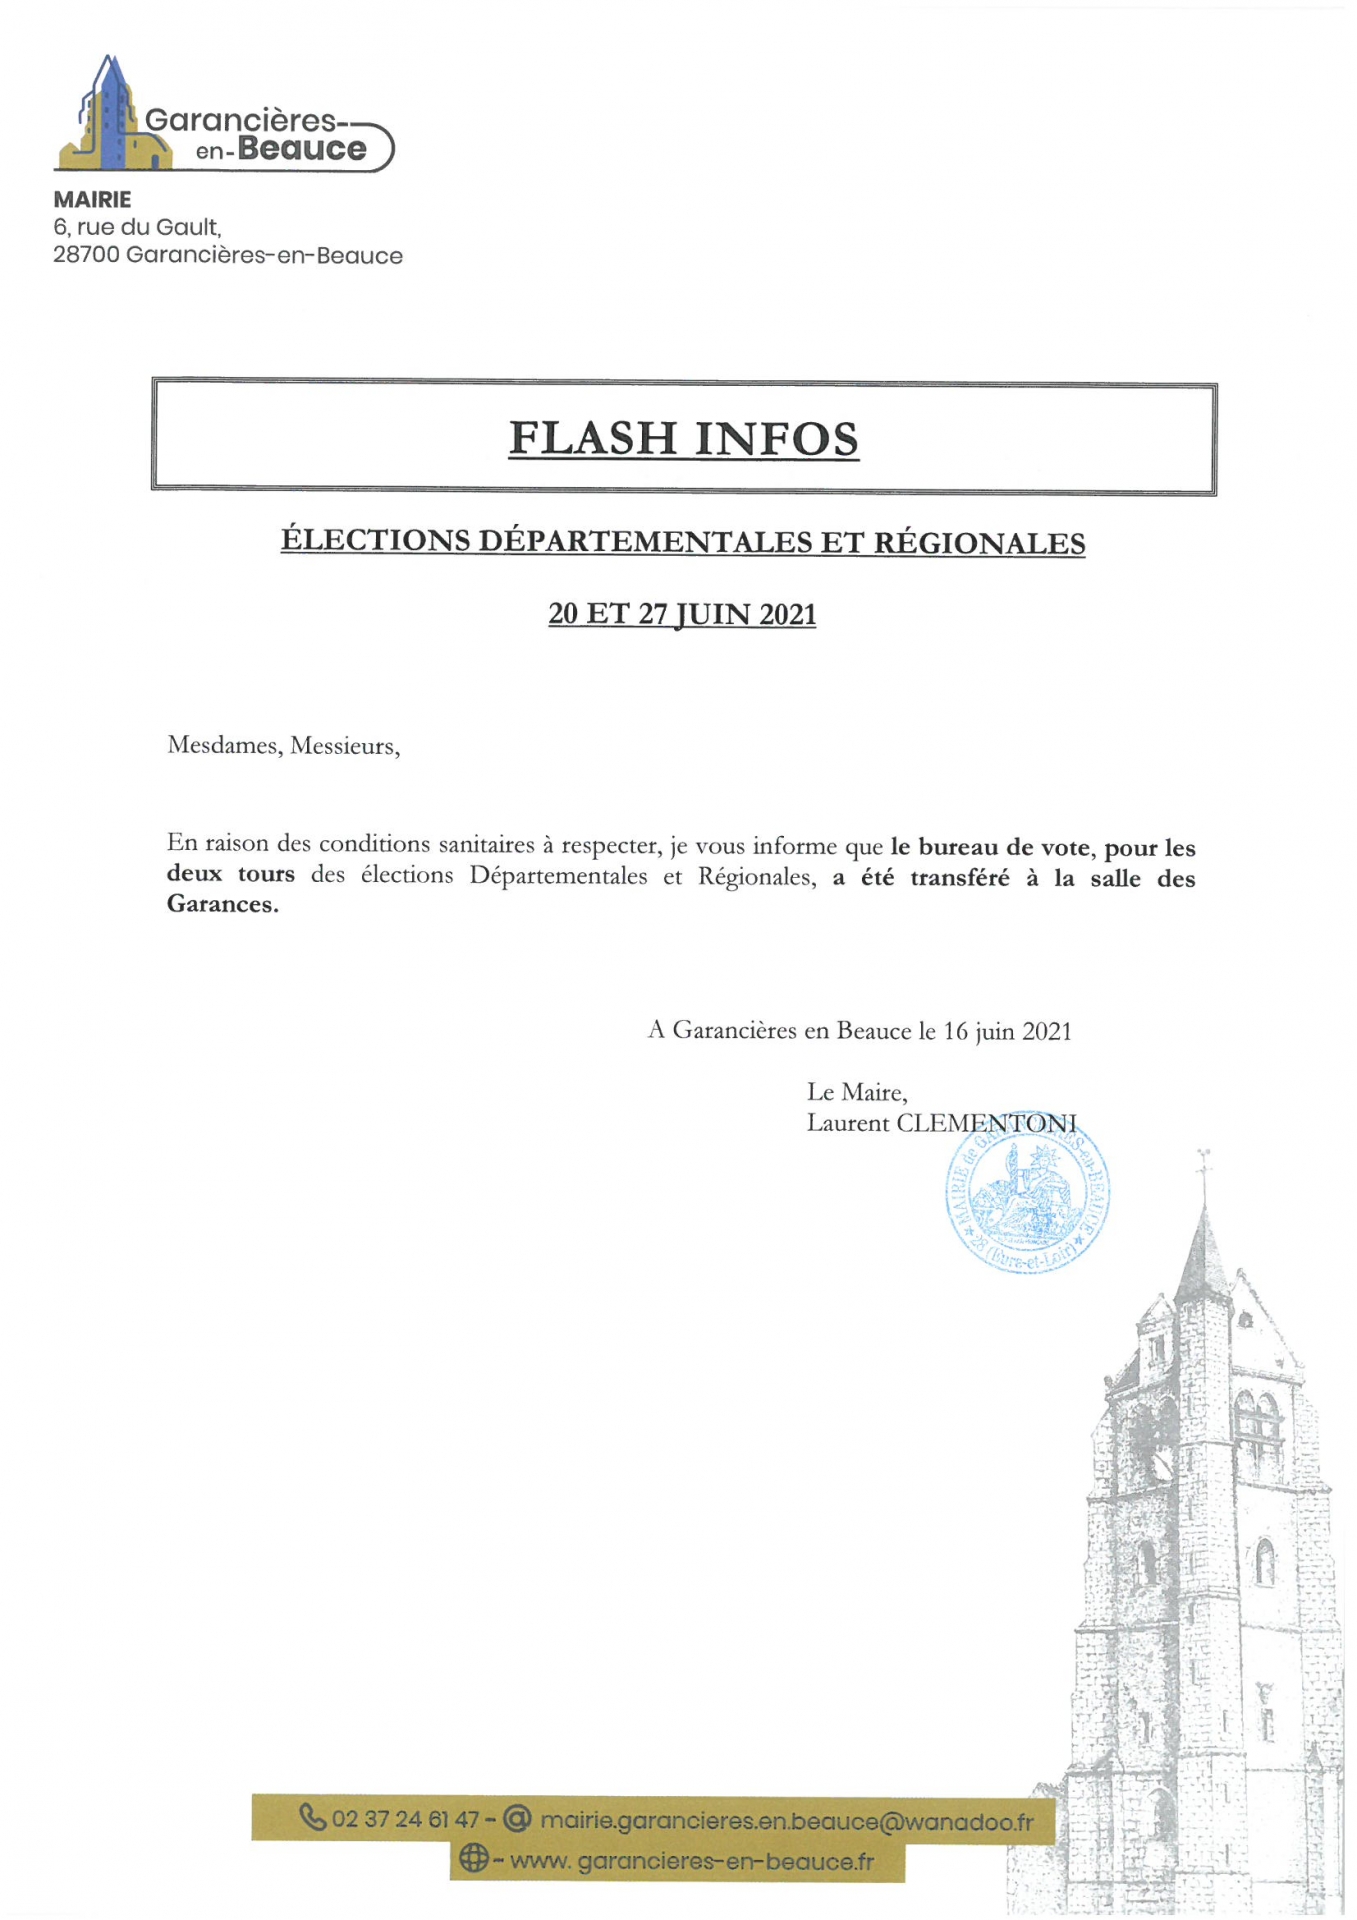 Elections Départementales et Régionales - 20 et 27 JUIN 2021